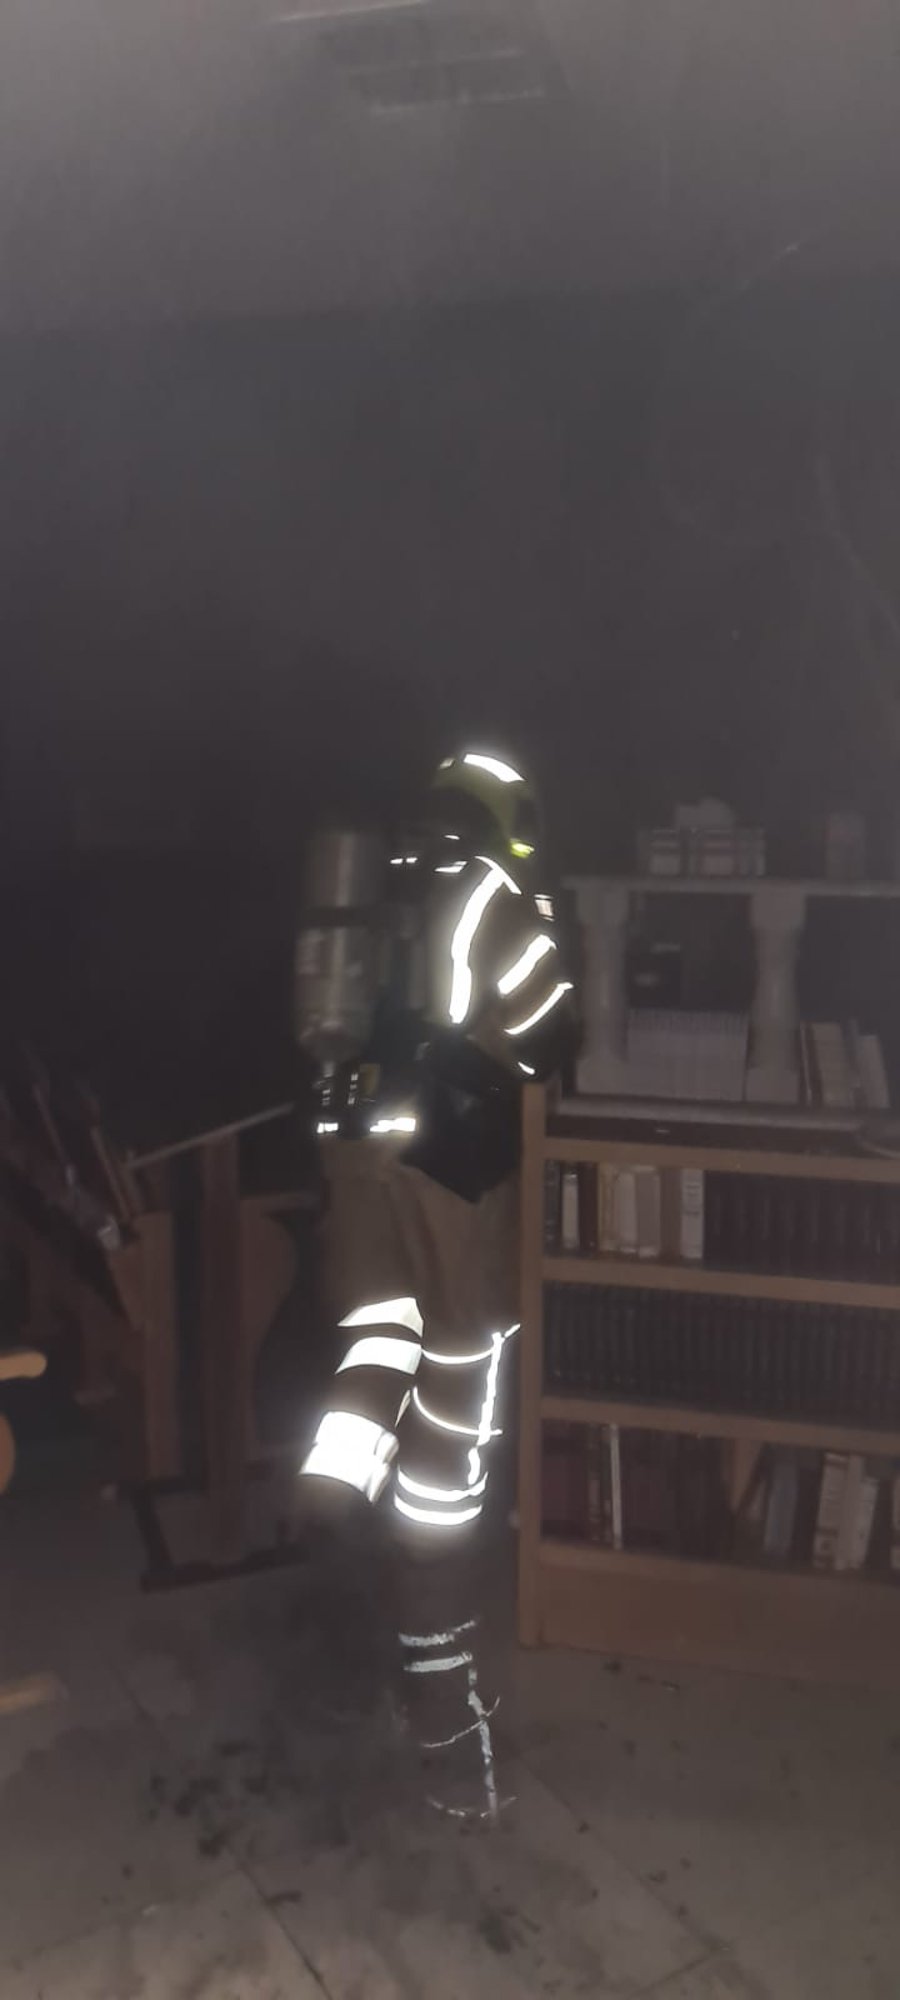 בית כנסת ב'נוף הגליל' עלה באש, נסיבות השריפה נבדקות